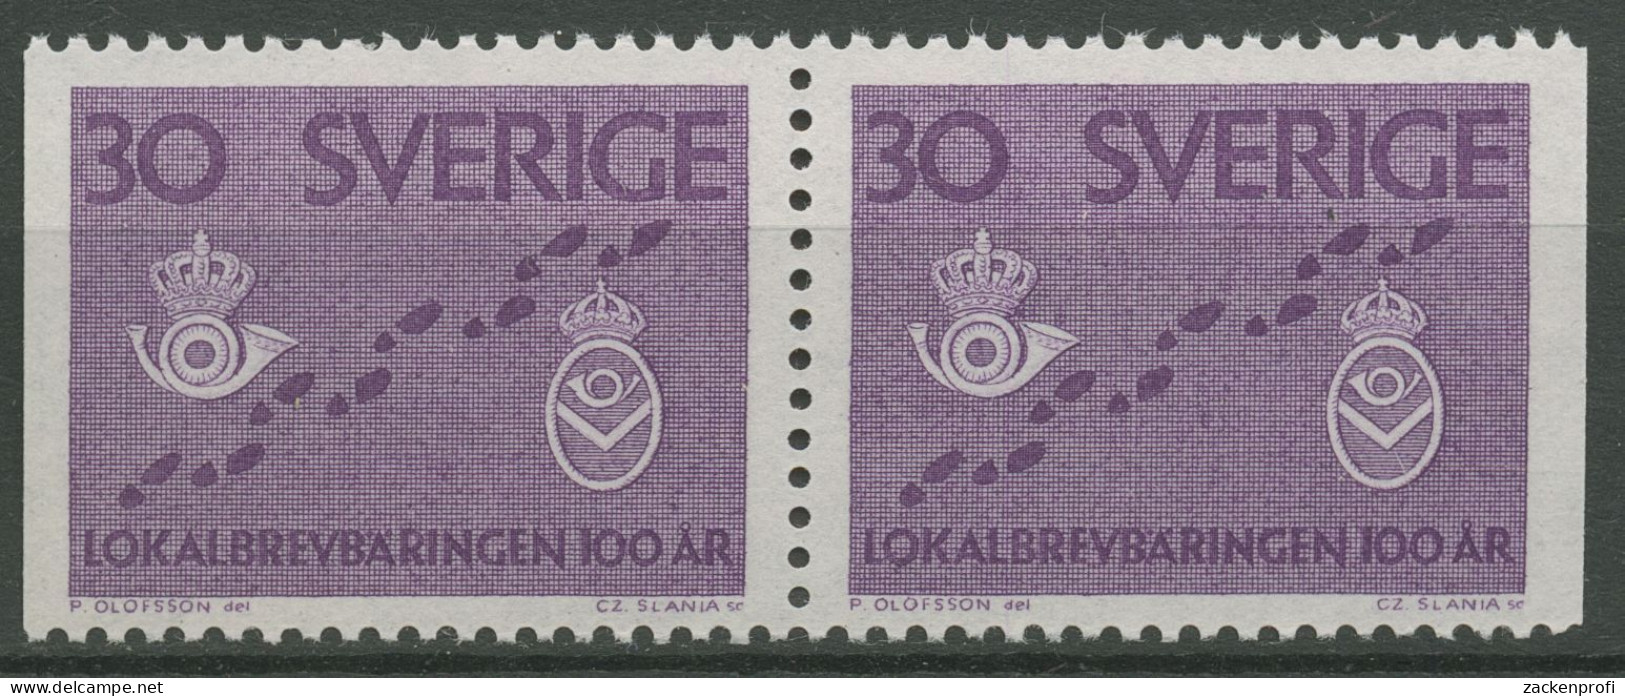 Schweden 1962 Postzustellung Briefträger-Brustschilder 485 Dl/Dr Paar Postfrisch - Neufs